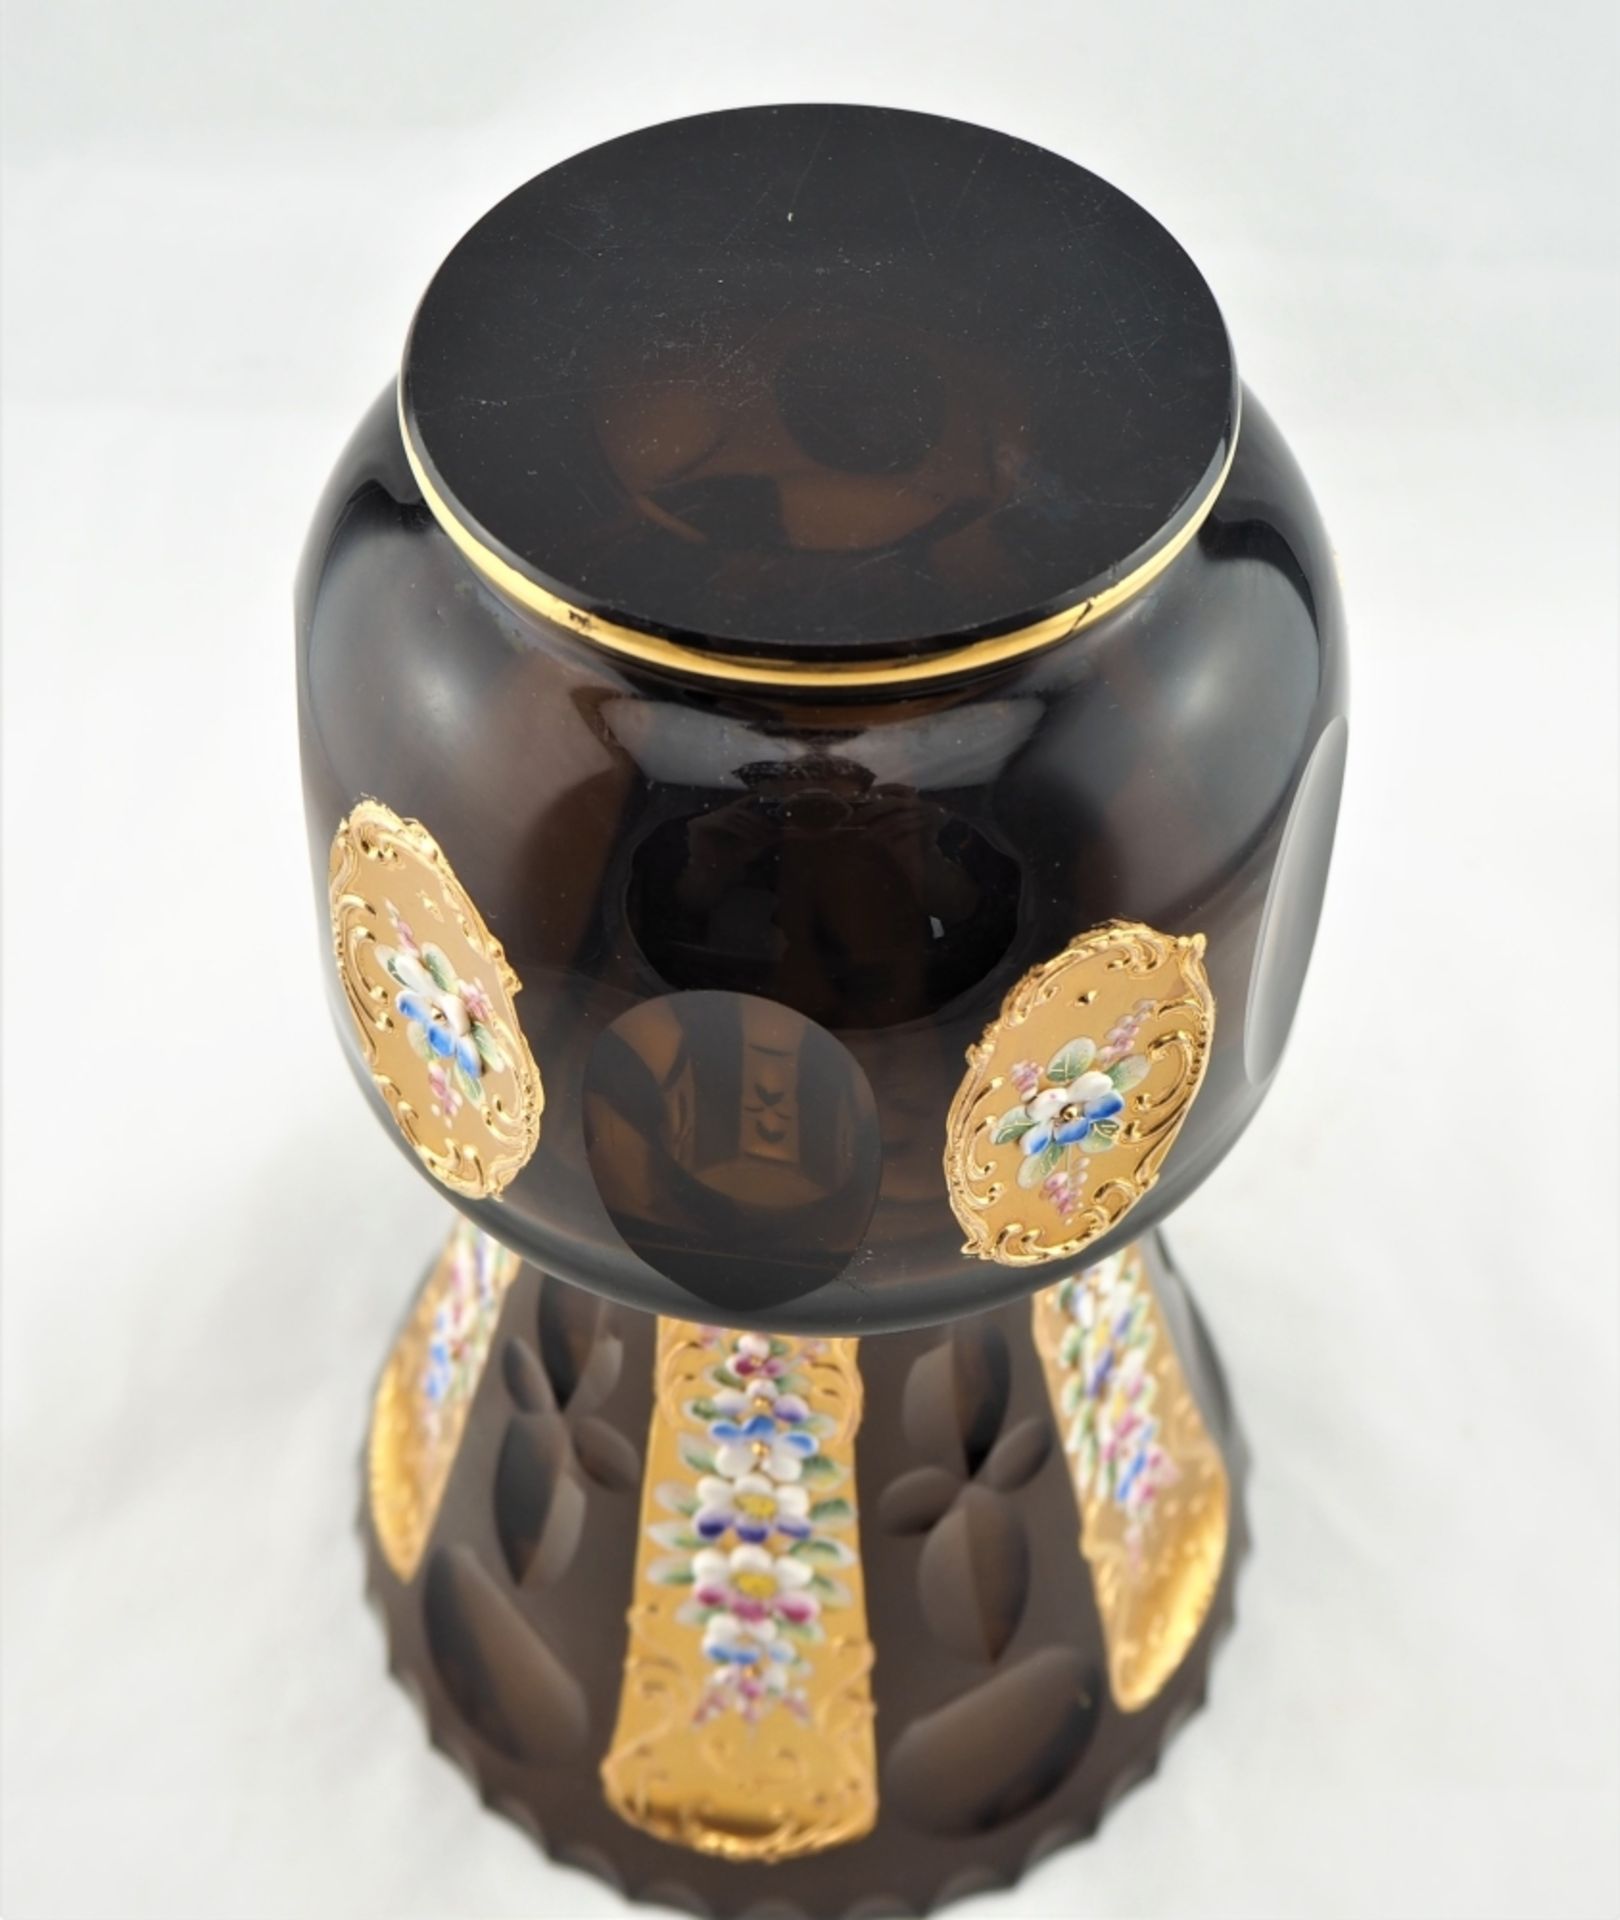 Vase, geschliffen, mit reicher Emailleverzierungaus braunem Glas, mit aufwändigem Schlif - Bild 4 aus 4